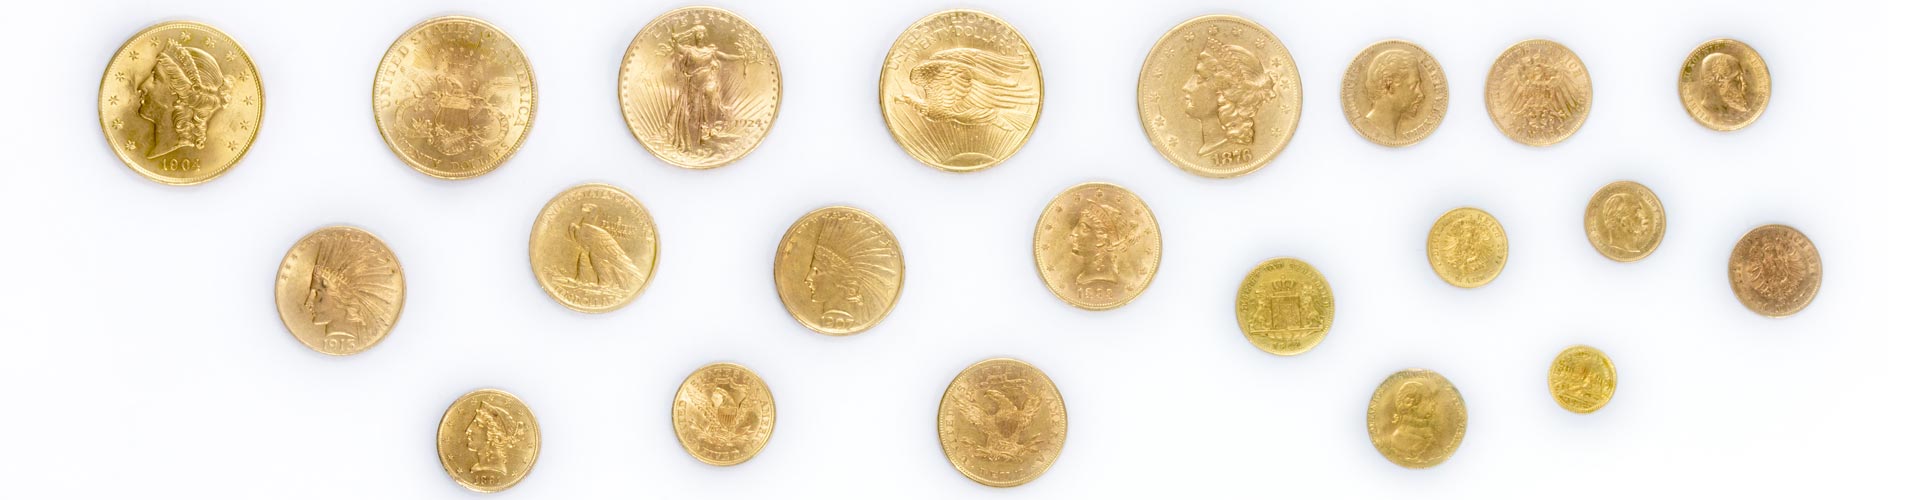 21 verschiedene Goldanlagemünzen und Sammlermünzen aus Gold in unterschiedlichen Grüßen